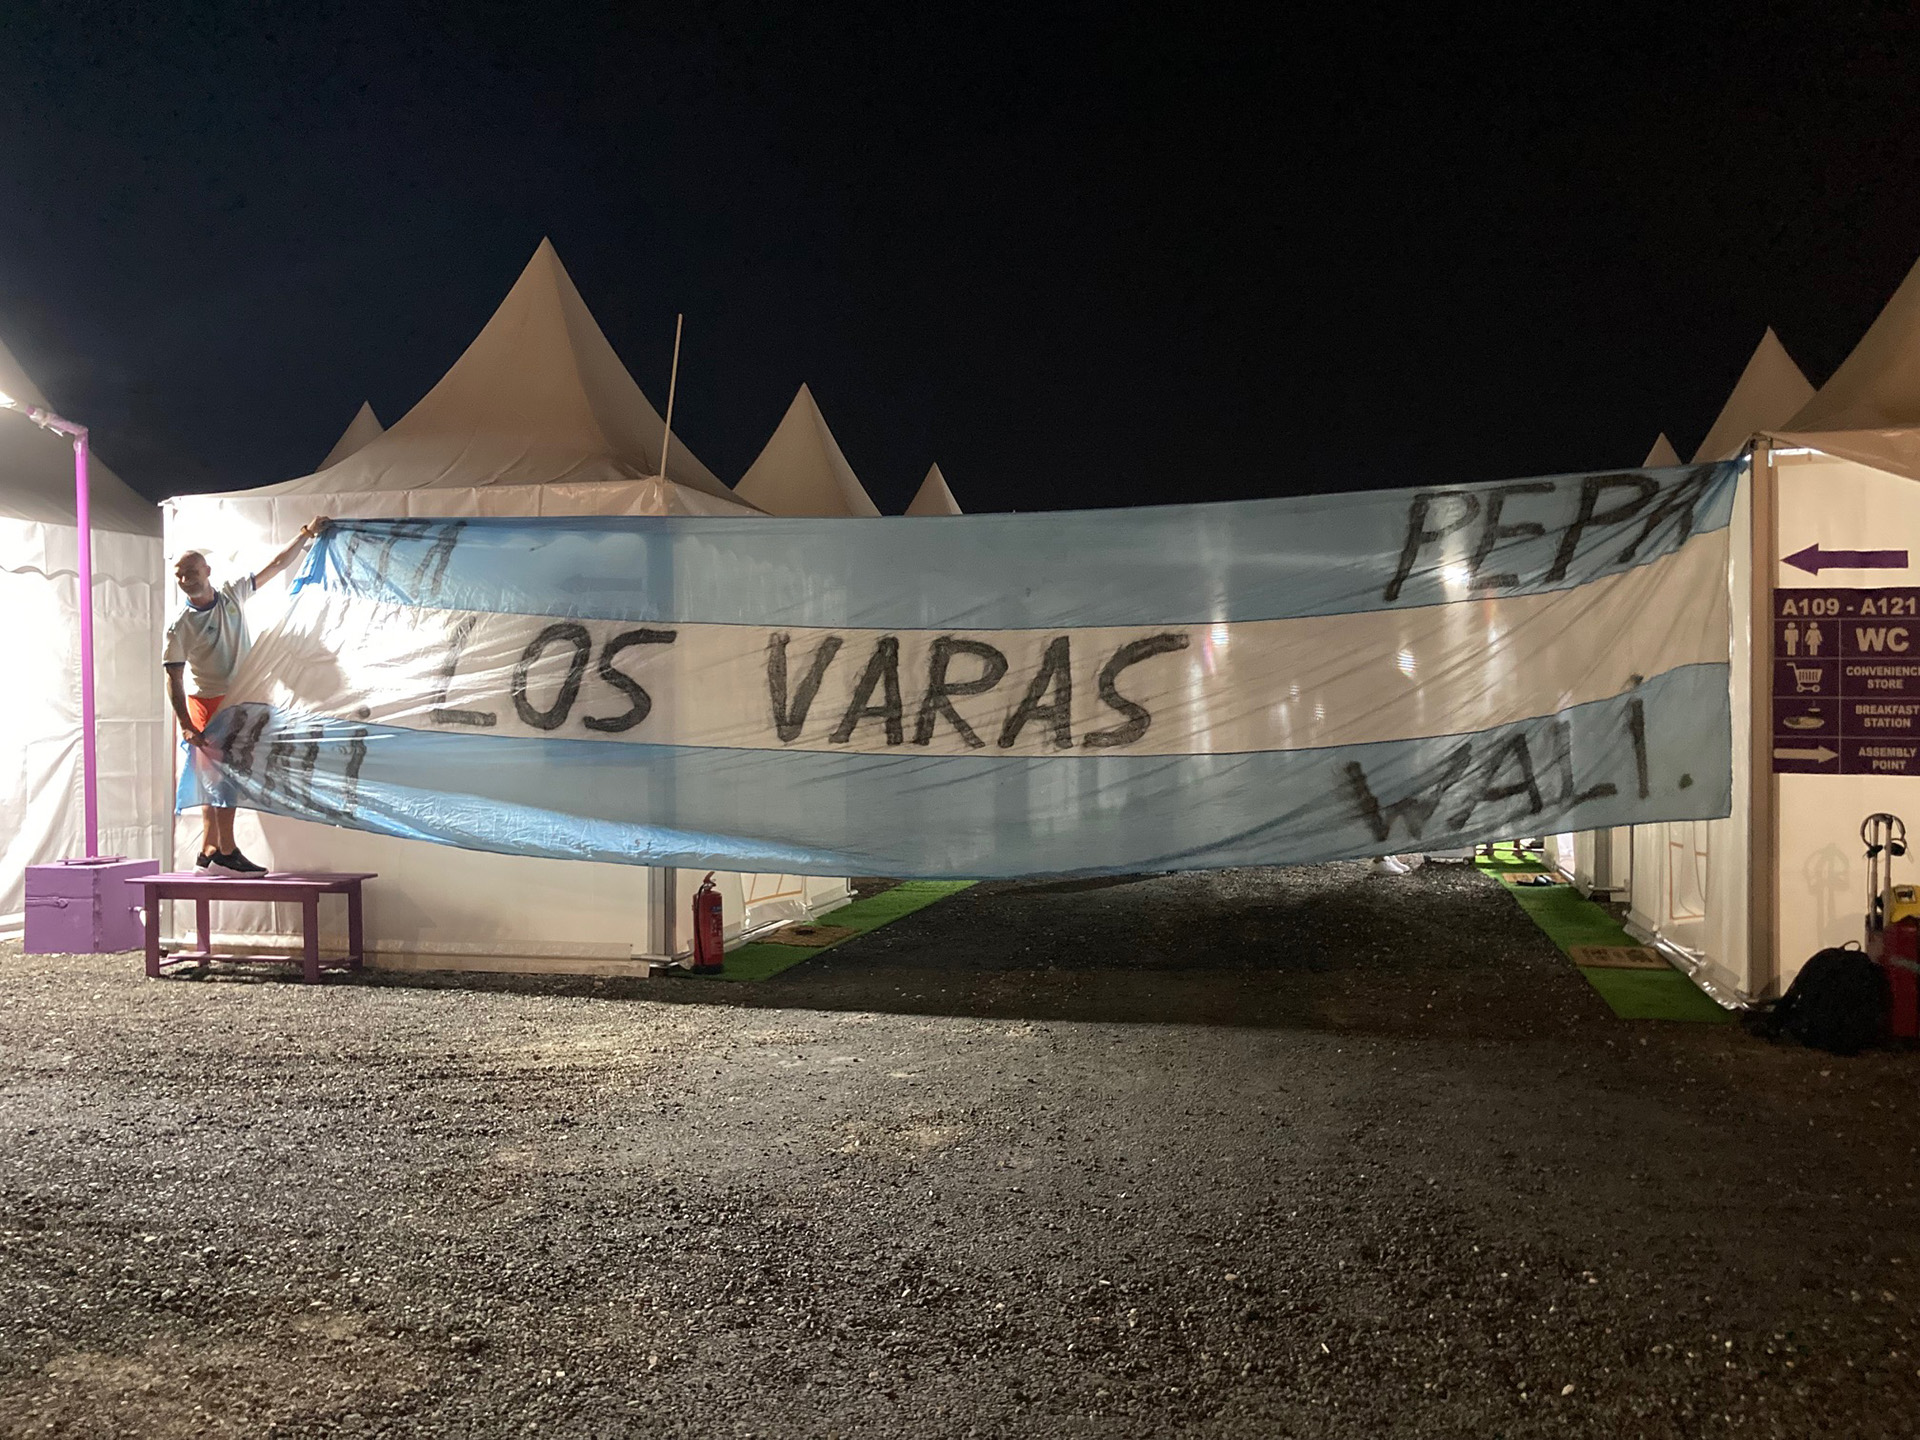 "Los Varas" lucen con orgullo su bandera argentina